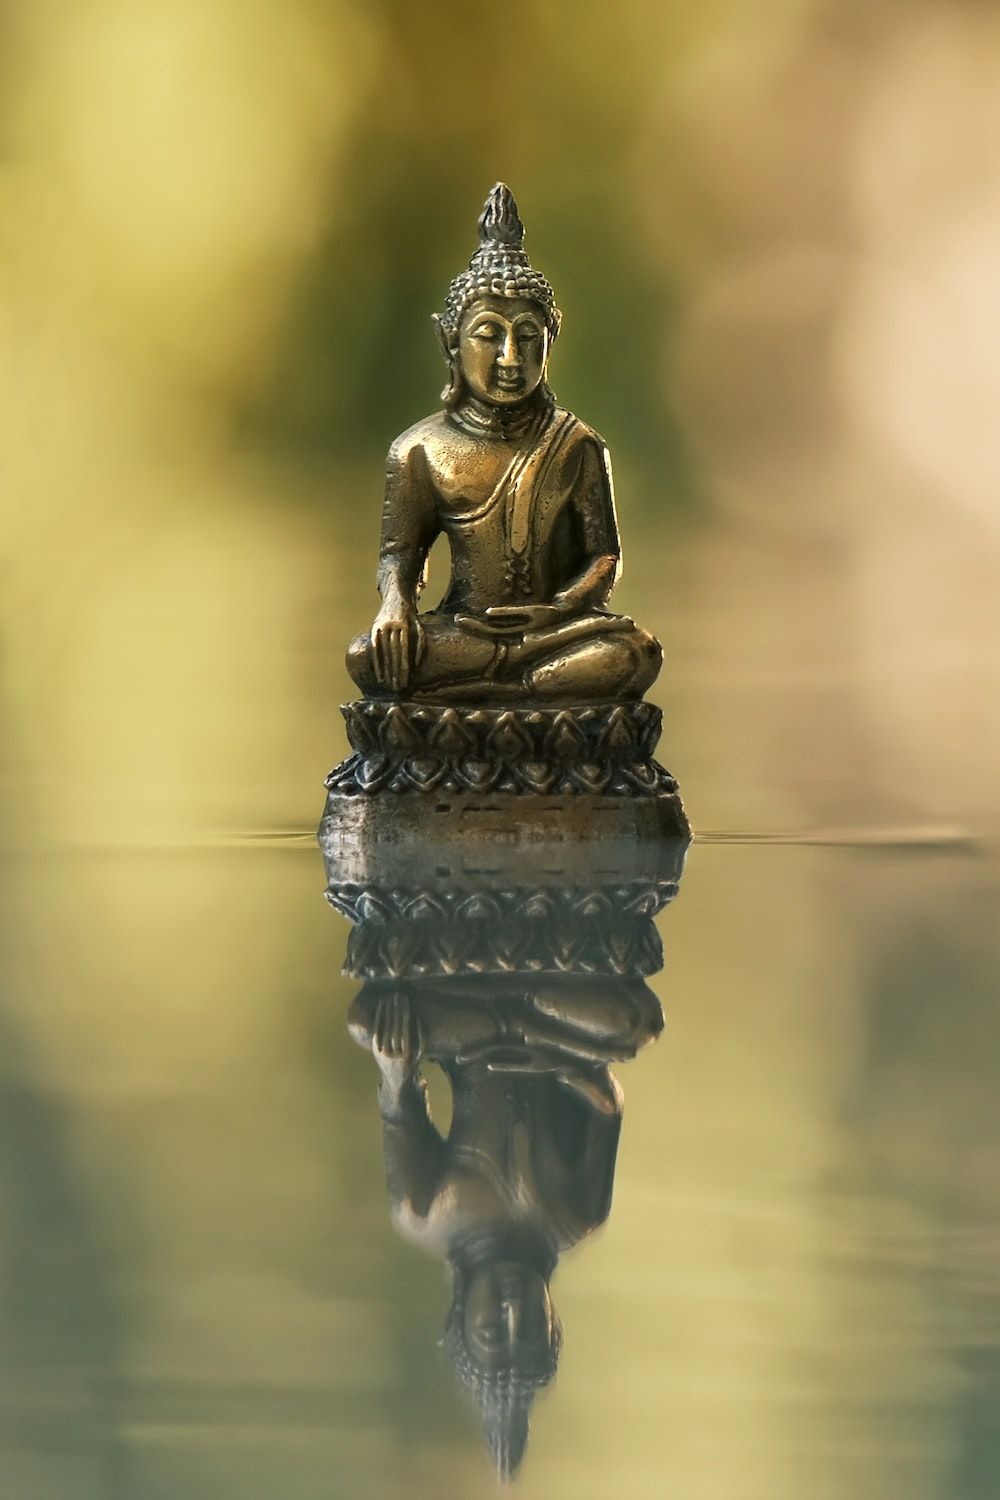  Buddha Hintergrundbild 1000x1500. Foto Zum Thema Eine Buddha Statue Sitzt Auf Einem Gewässer